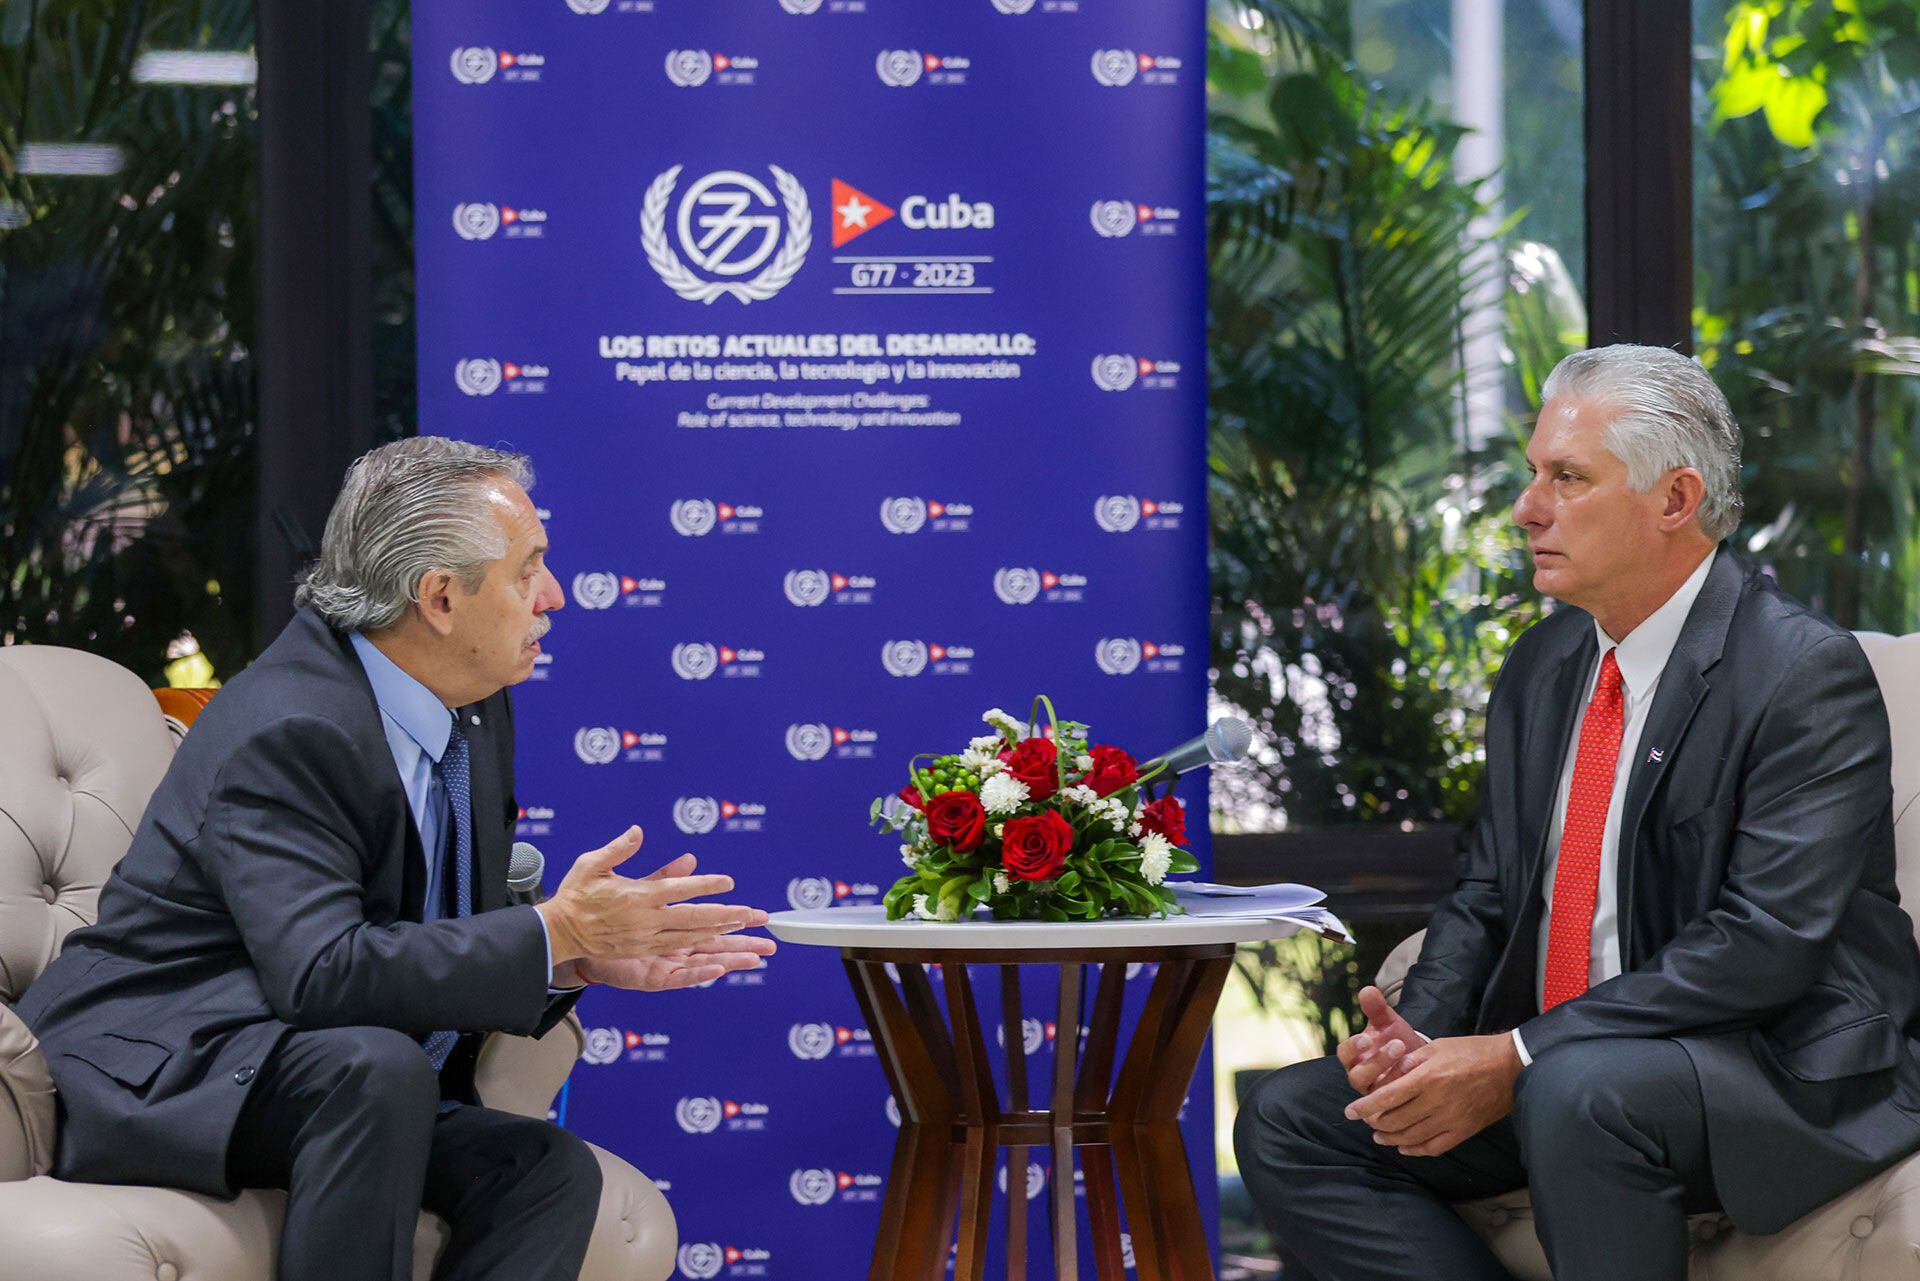 Alberto Fernández mantuvo una bilateral con el presidente cubano Miguel Díaz Canel durante el encuentro del G77 en La Habana. Allí planteó también la necesidad de una reestructuración de la arquitectura financiera mundial